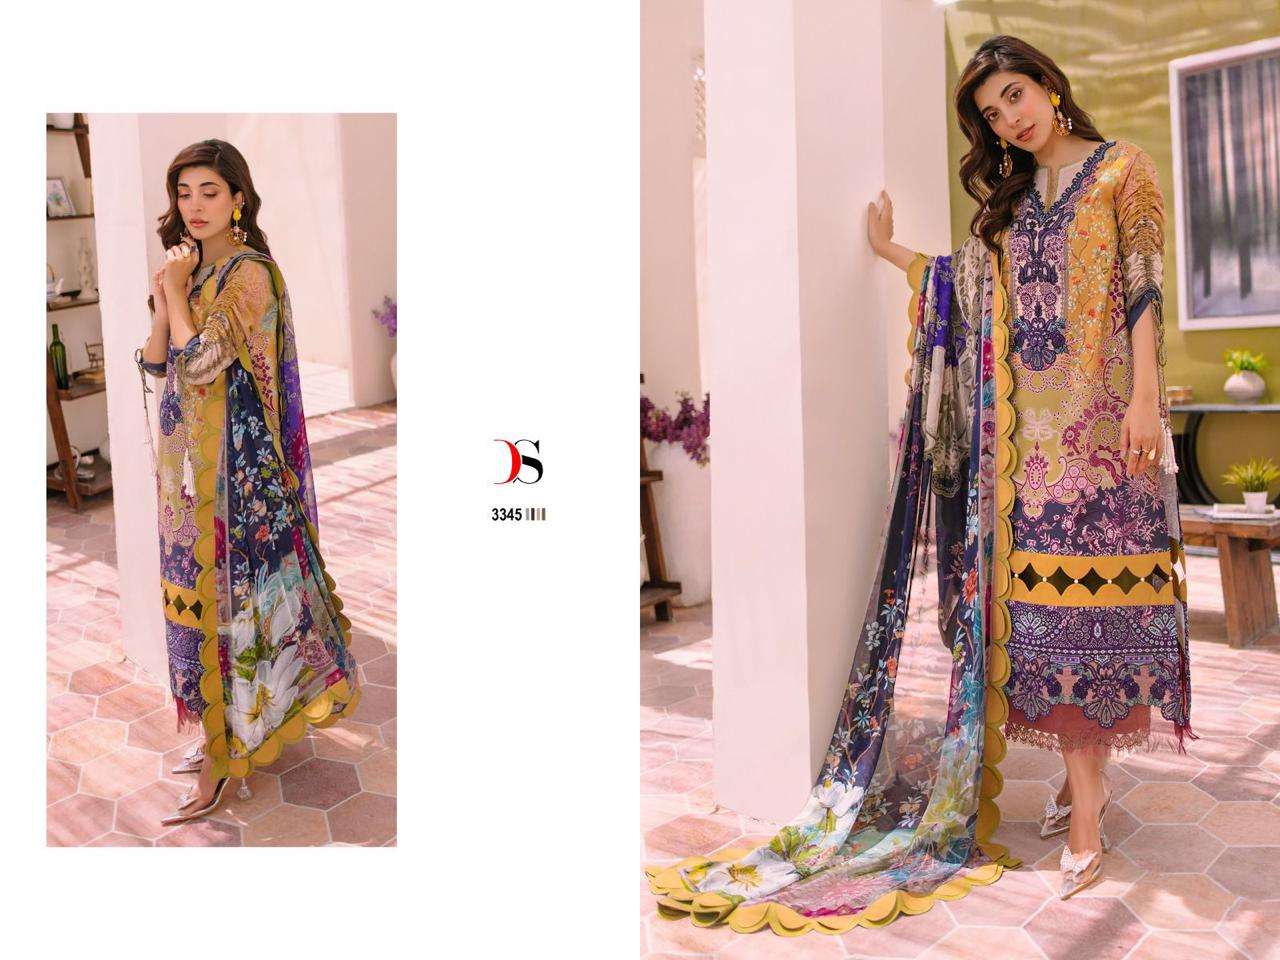 Deepsy suits firdous bliss lawn 23 pakistani suits wholesale manufacturer in surat Chiffon Dupatta - jilaniwholesalesuit